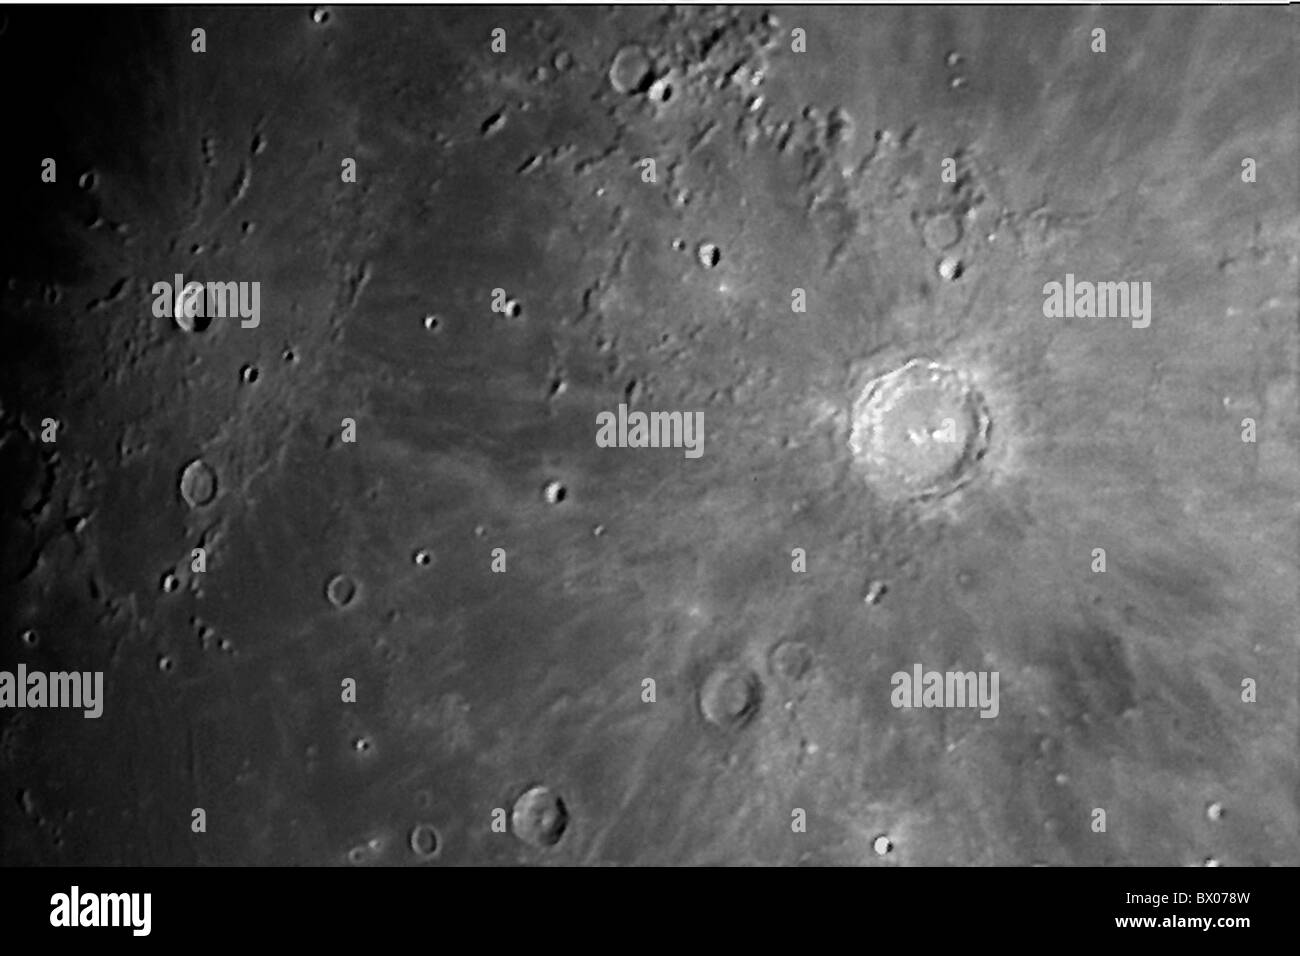 Détail Copernic astronomie lune cratère Kopernikus surface surface lunaire noir et blanc Banque D'Images